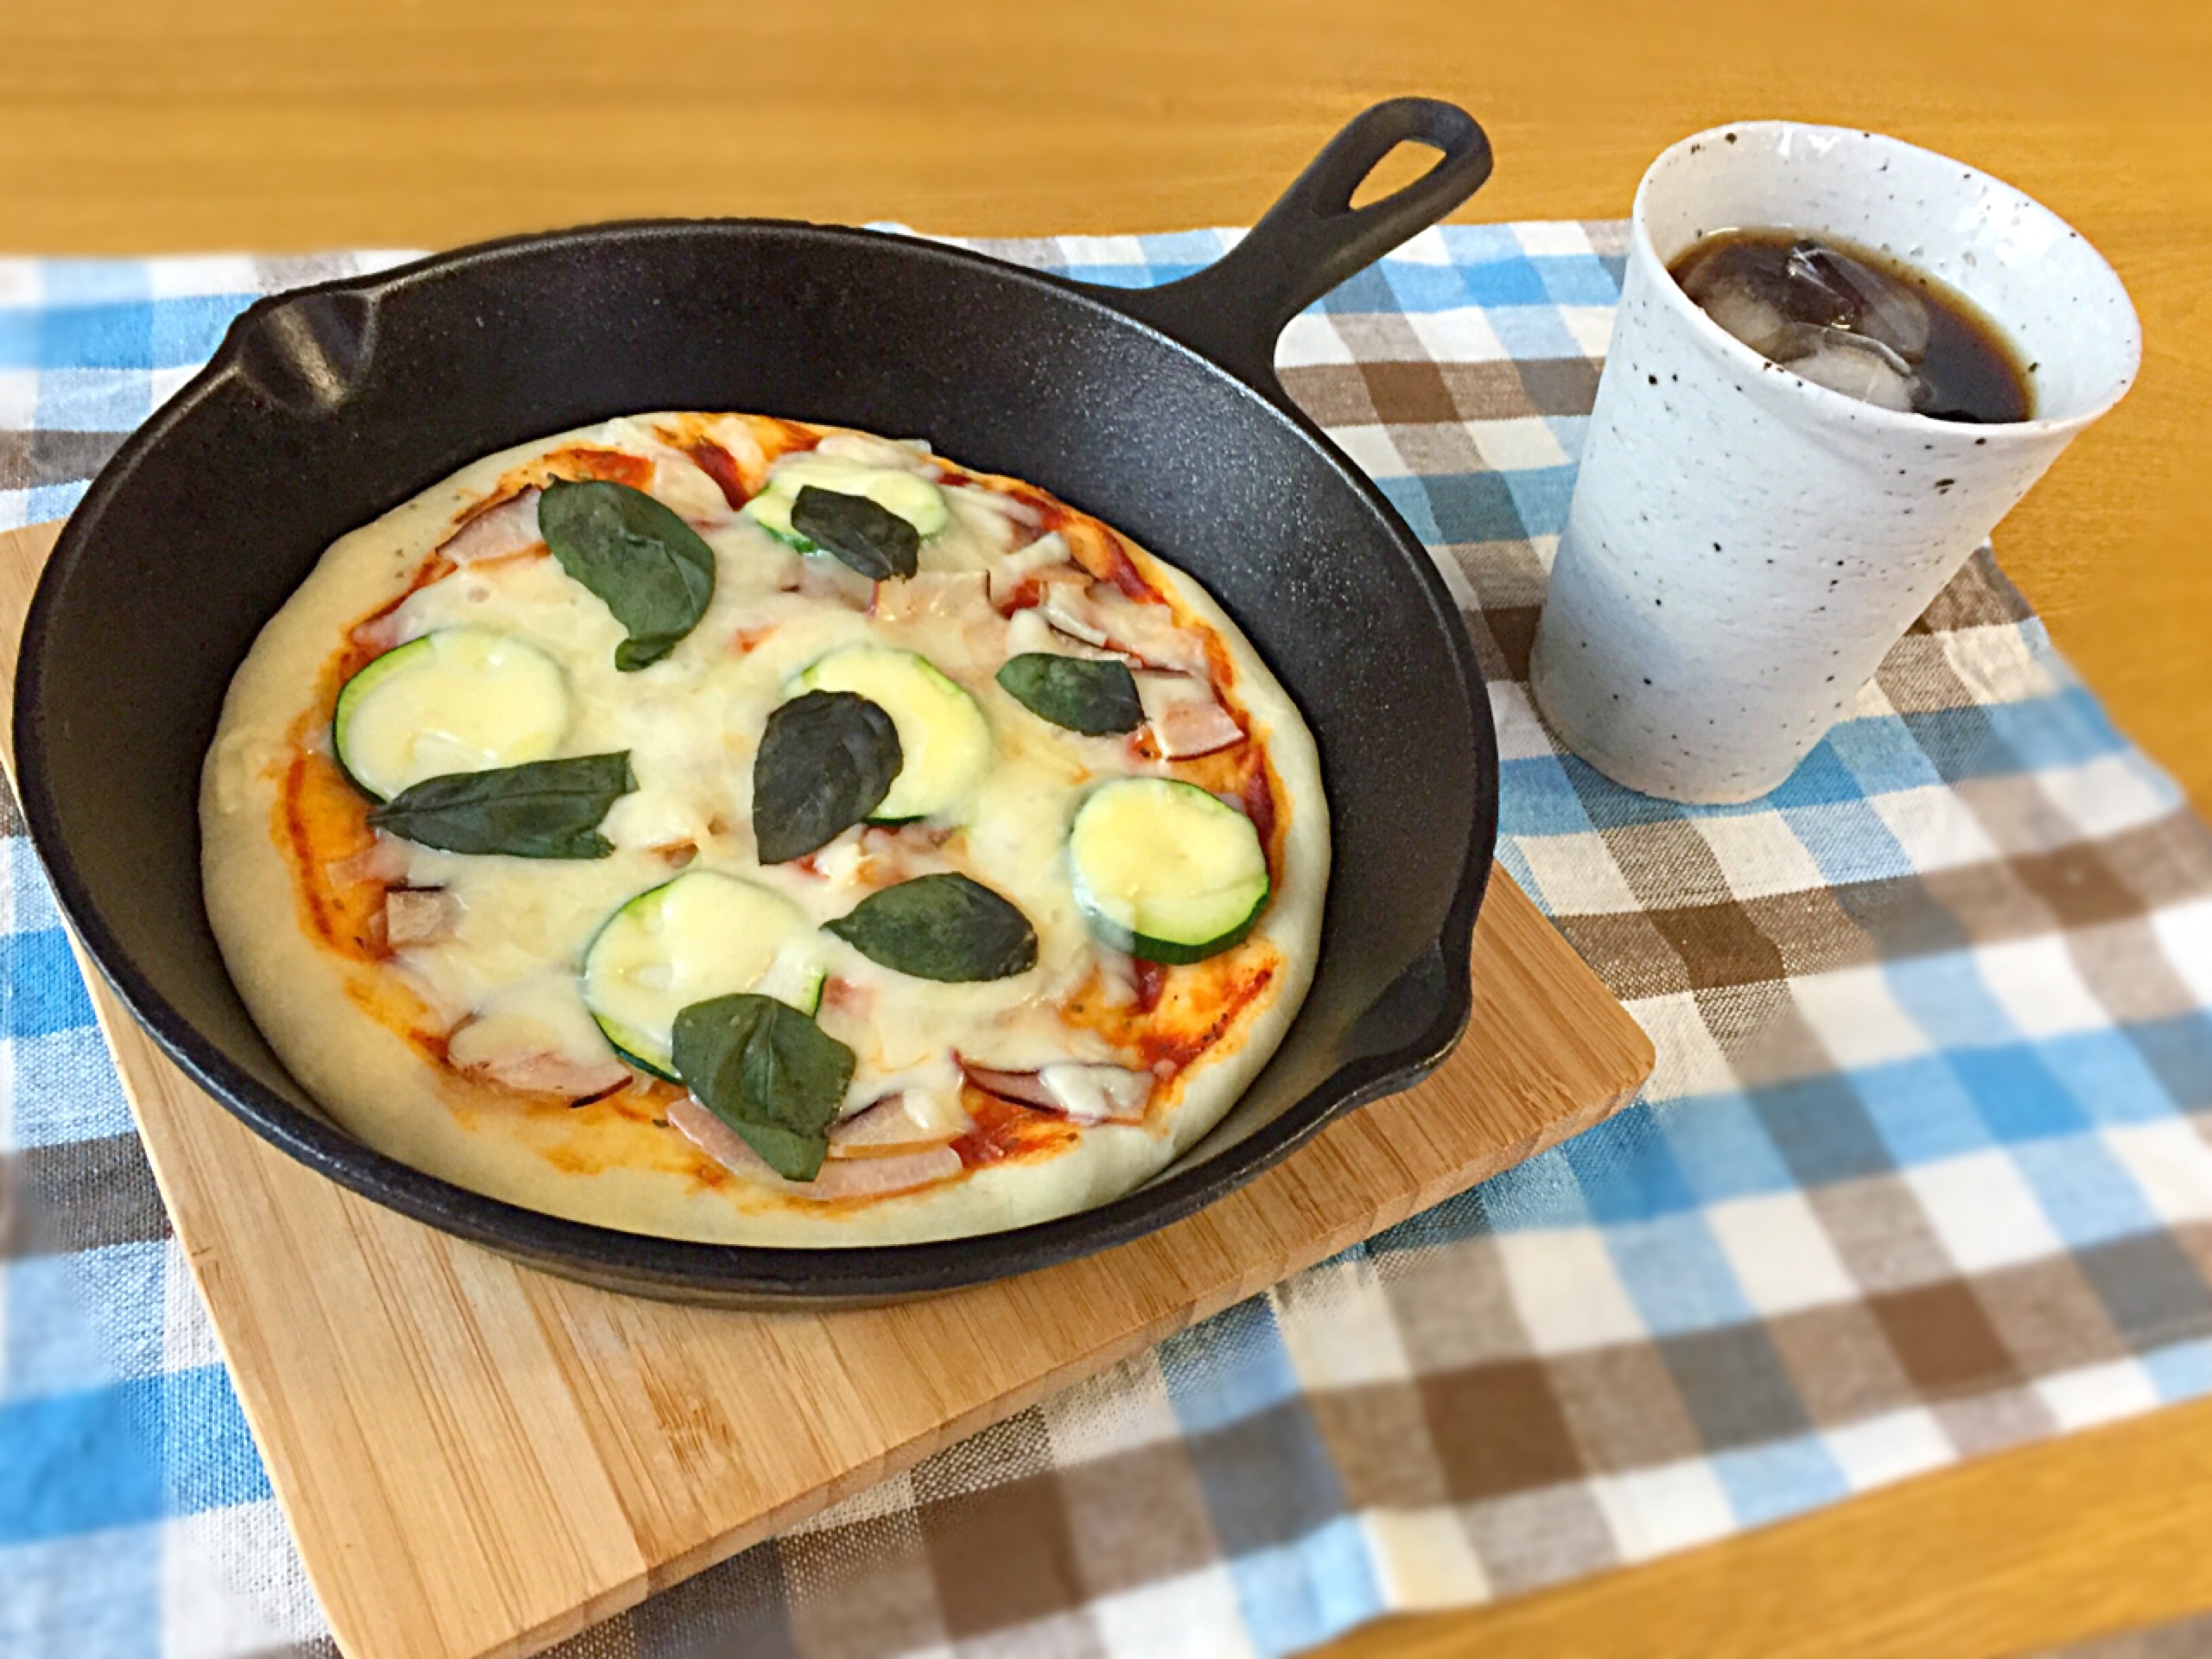 ズッキーニとタコの燻製のピザ。